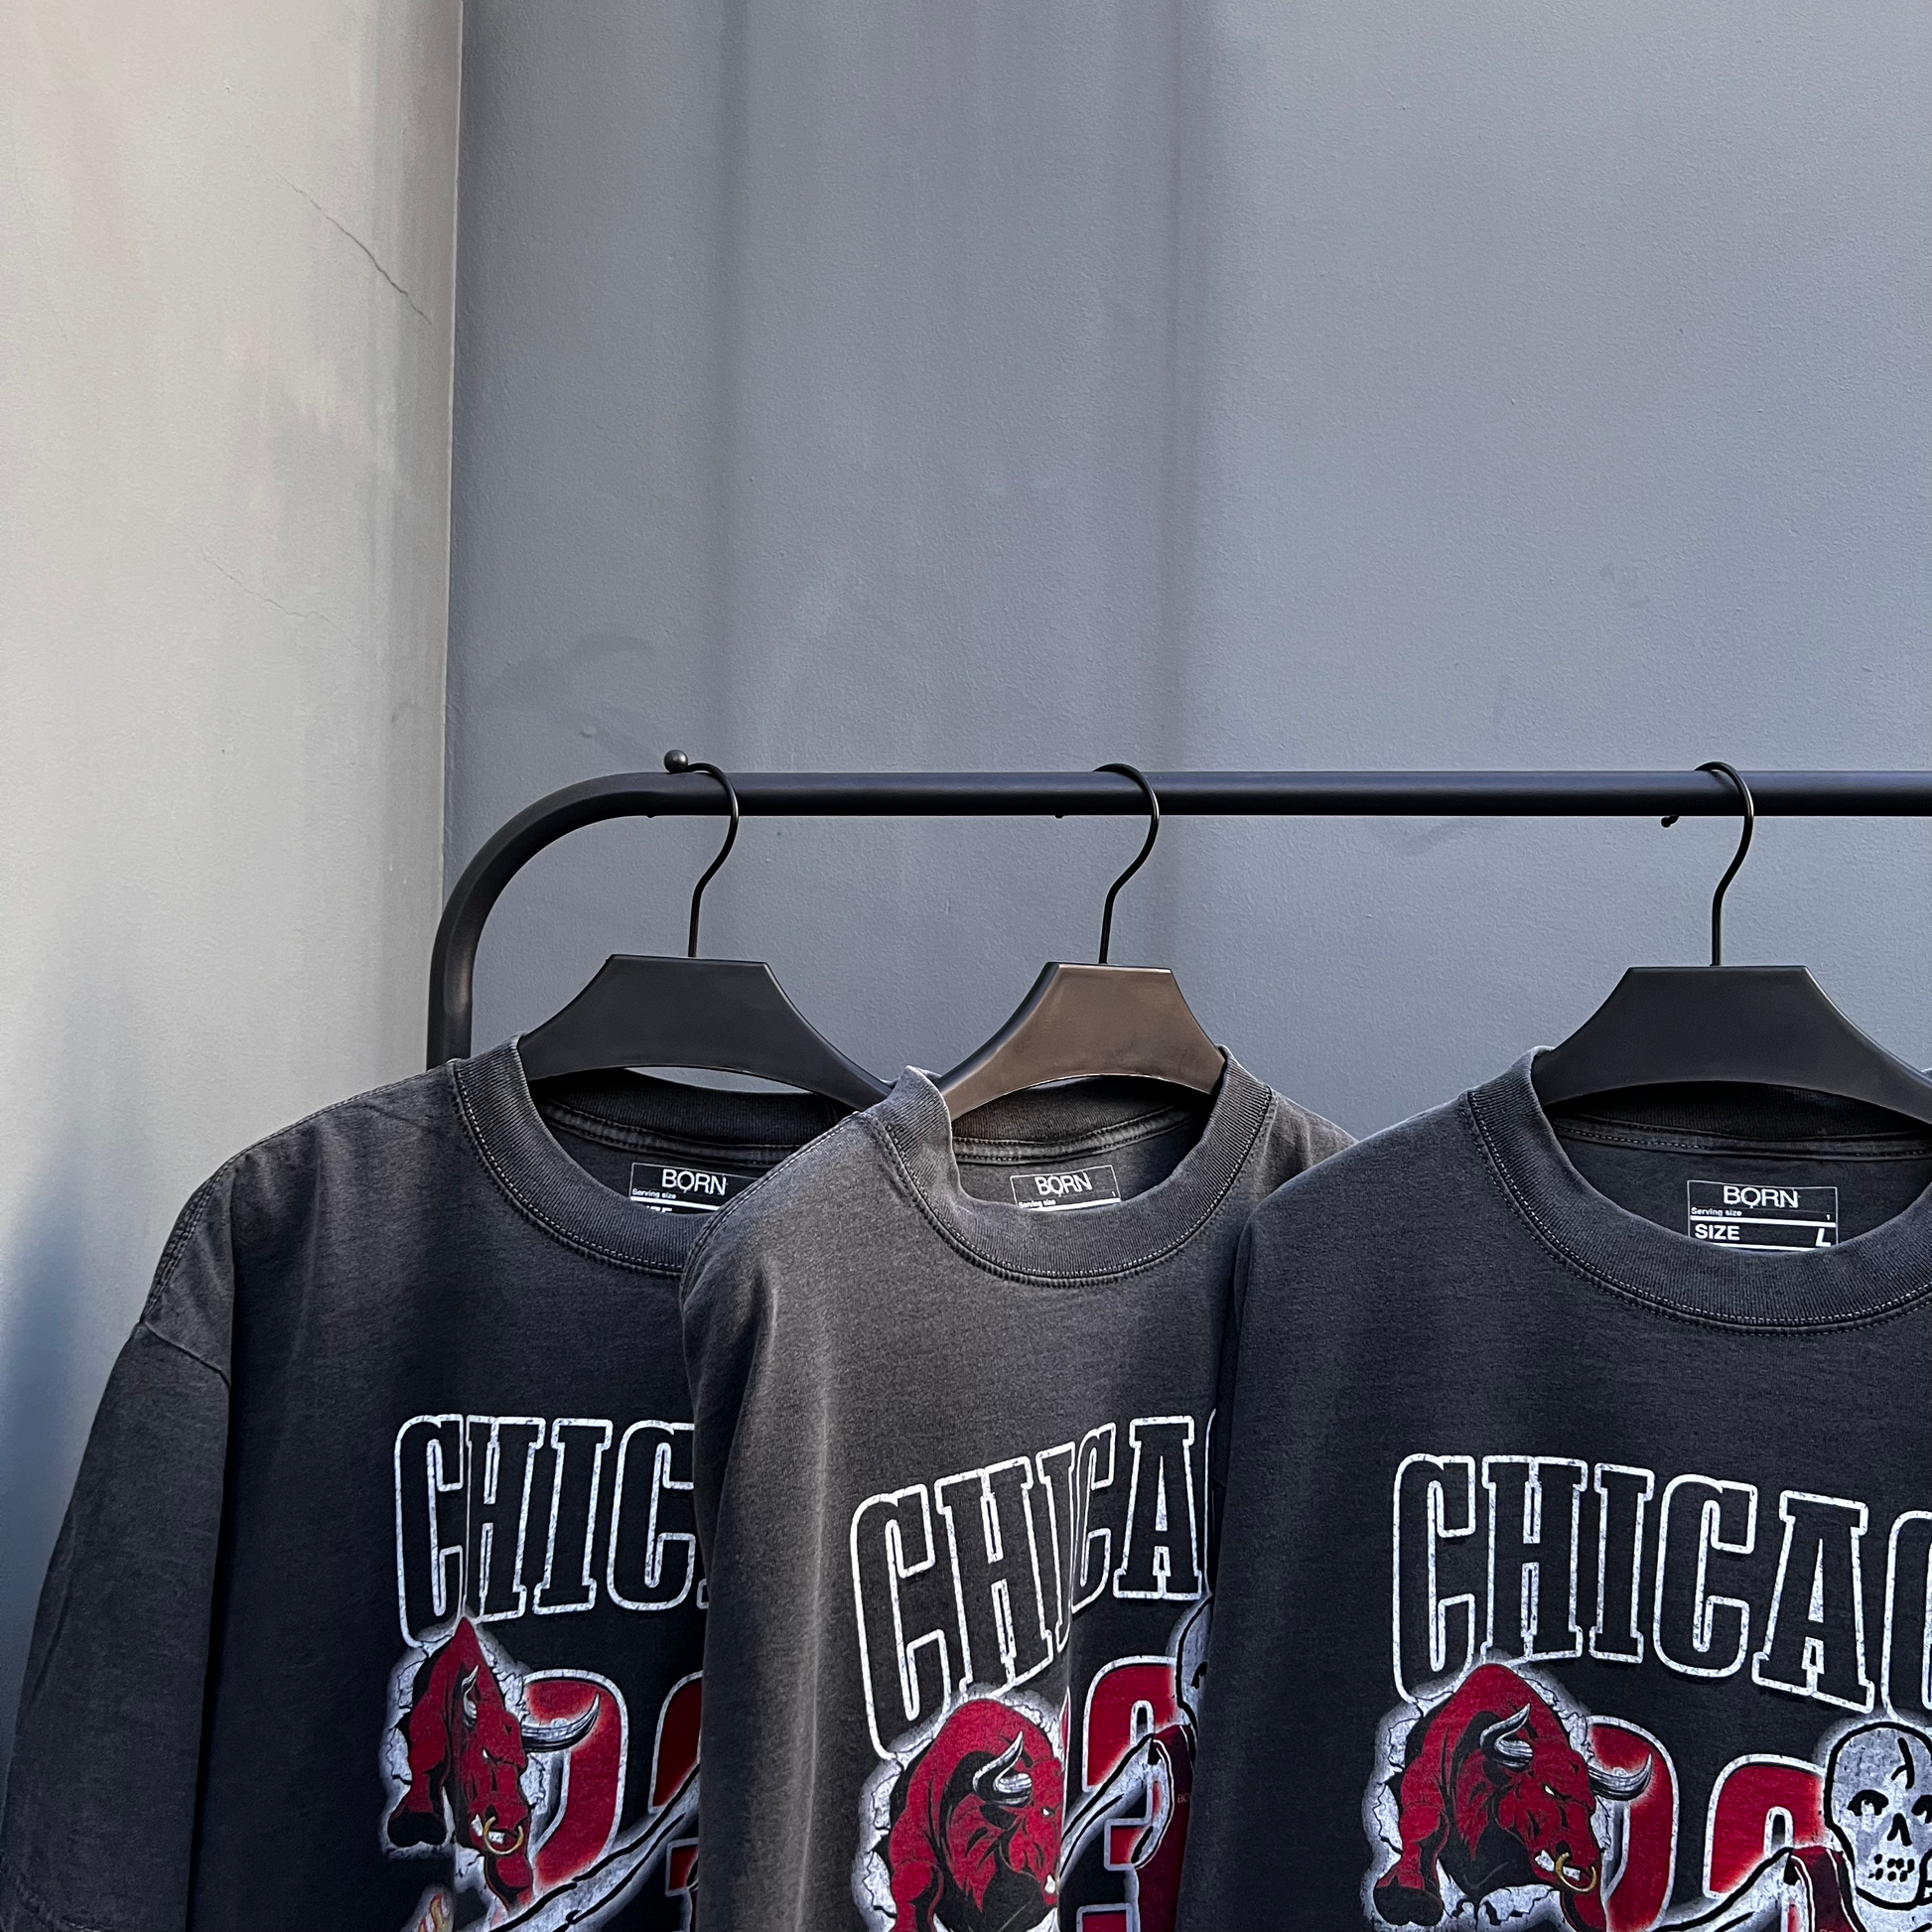 Chicago Bulls 23 Michael Jordan Skeleton T-Shirt 